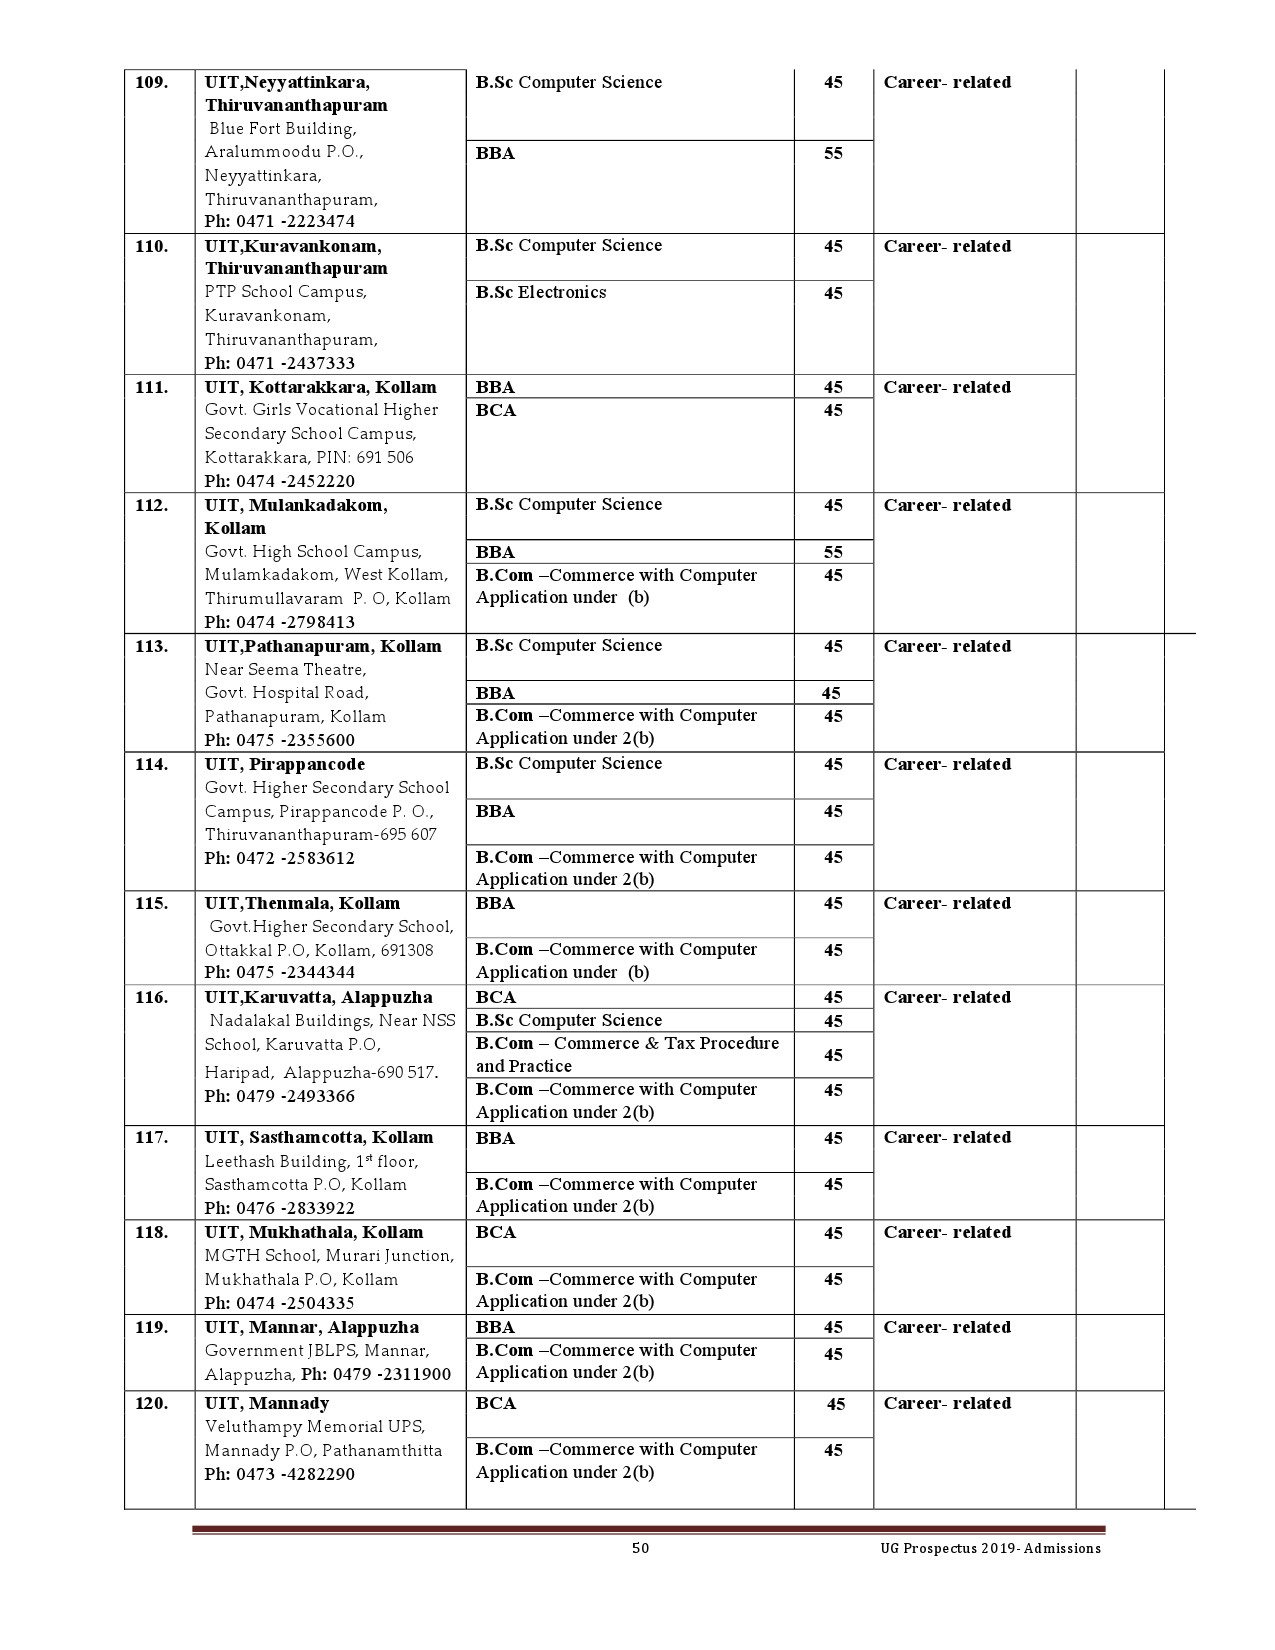 Kerala University UG Admission Prospectus 2019 - Notification Image 50